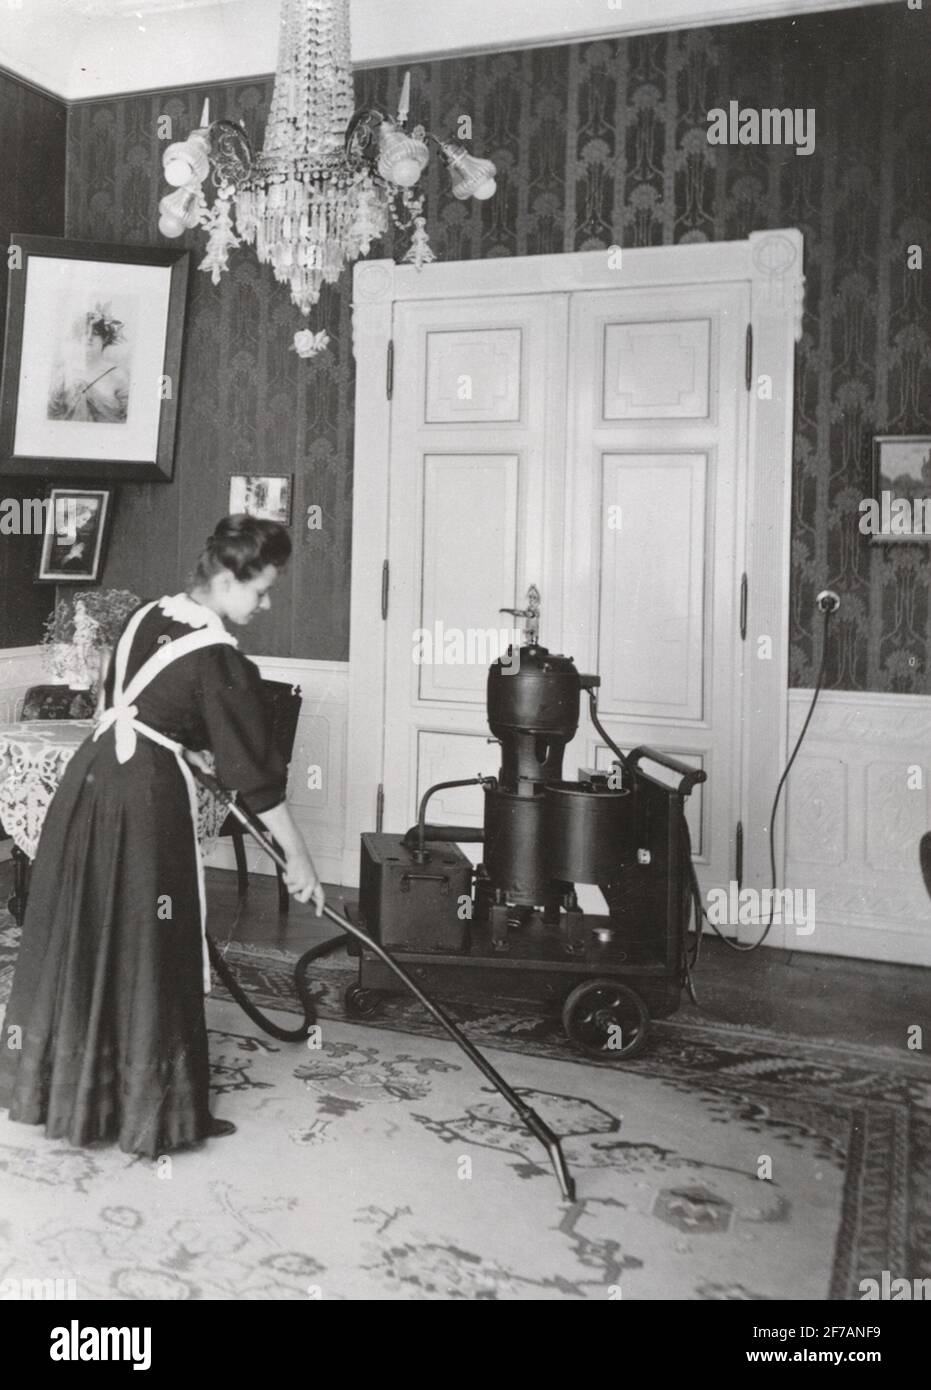 Barres Fahr de la vis sans fin d'alimentation, 1905. Femme / Maid avec  aspirateur à vapeur de Siemens, 1905 Photo Stock - Alamy